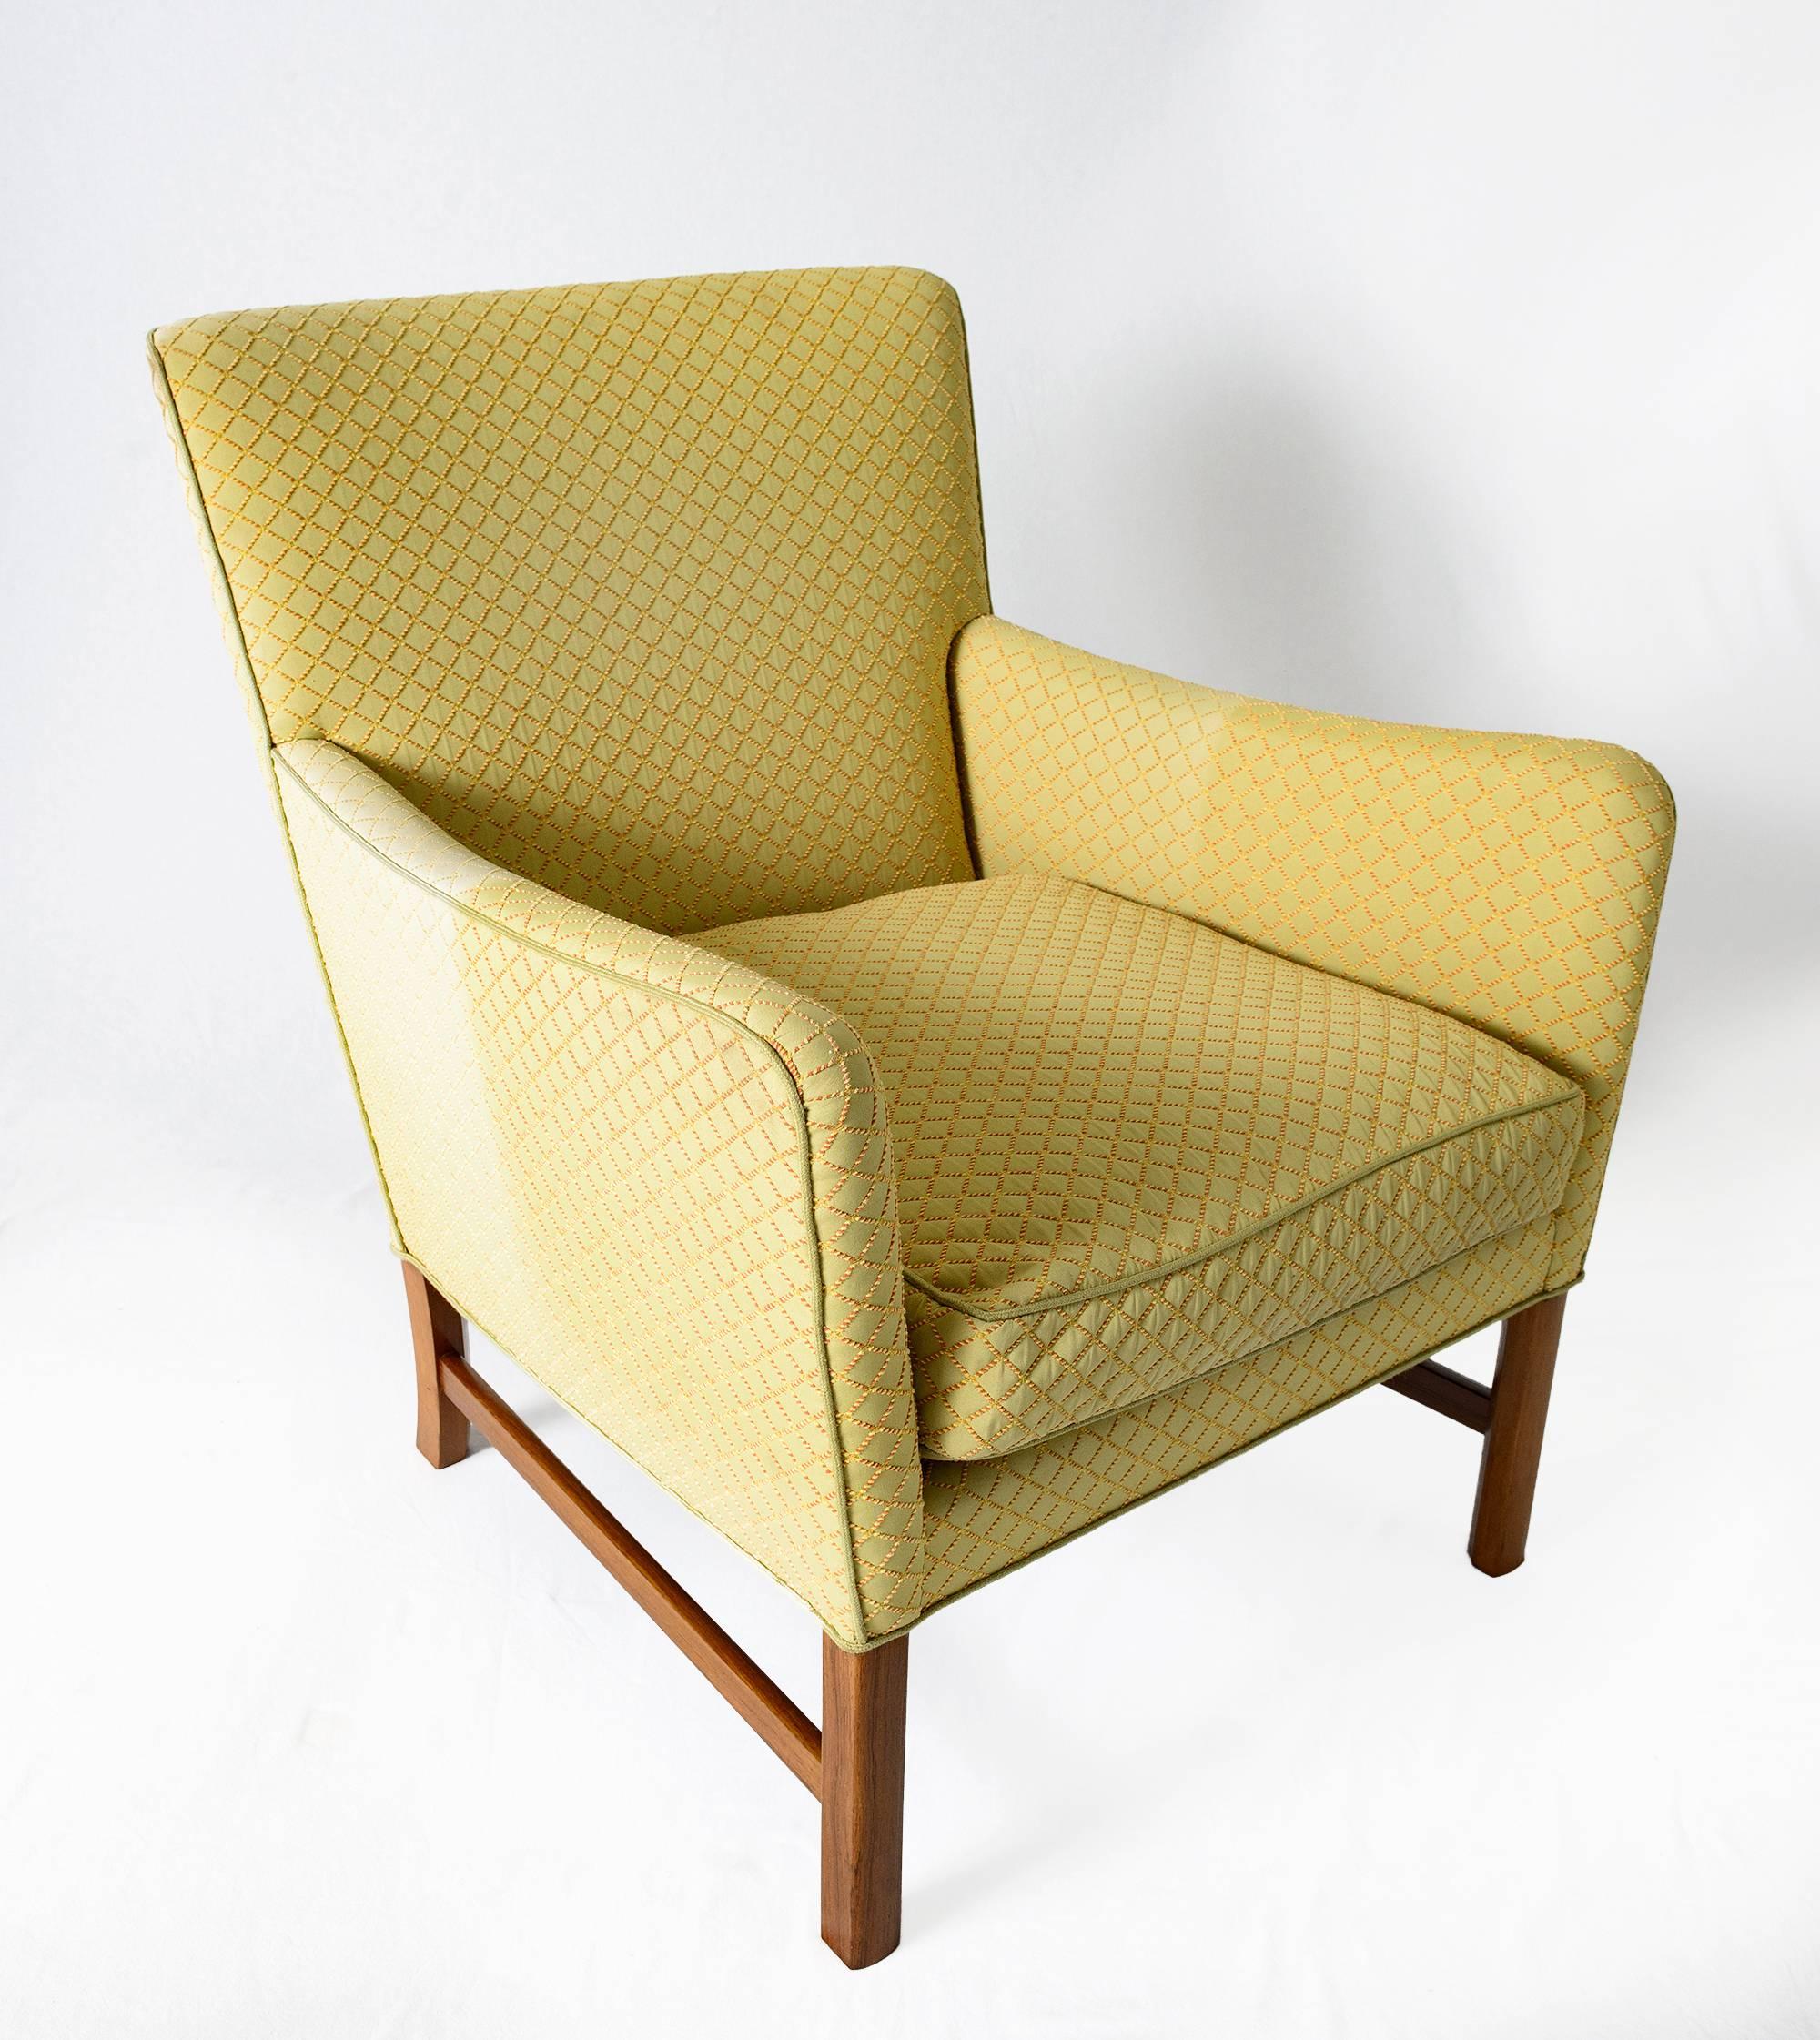 Ole Wanscher Lounge Chair, entworfen 1960 und hergestellt von A. J. Iversen.